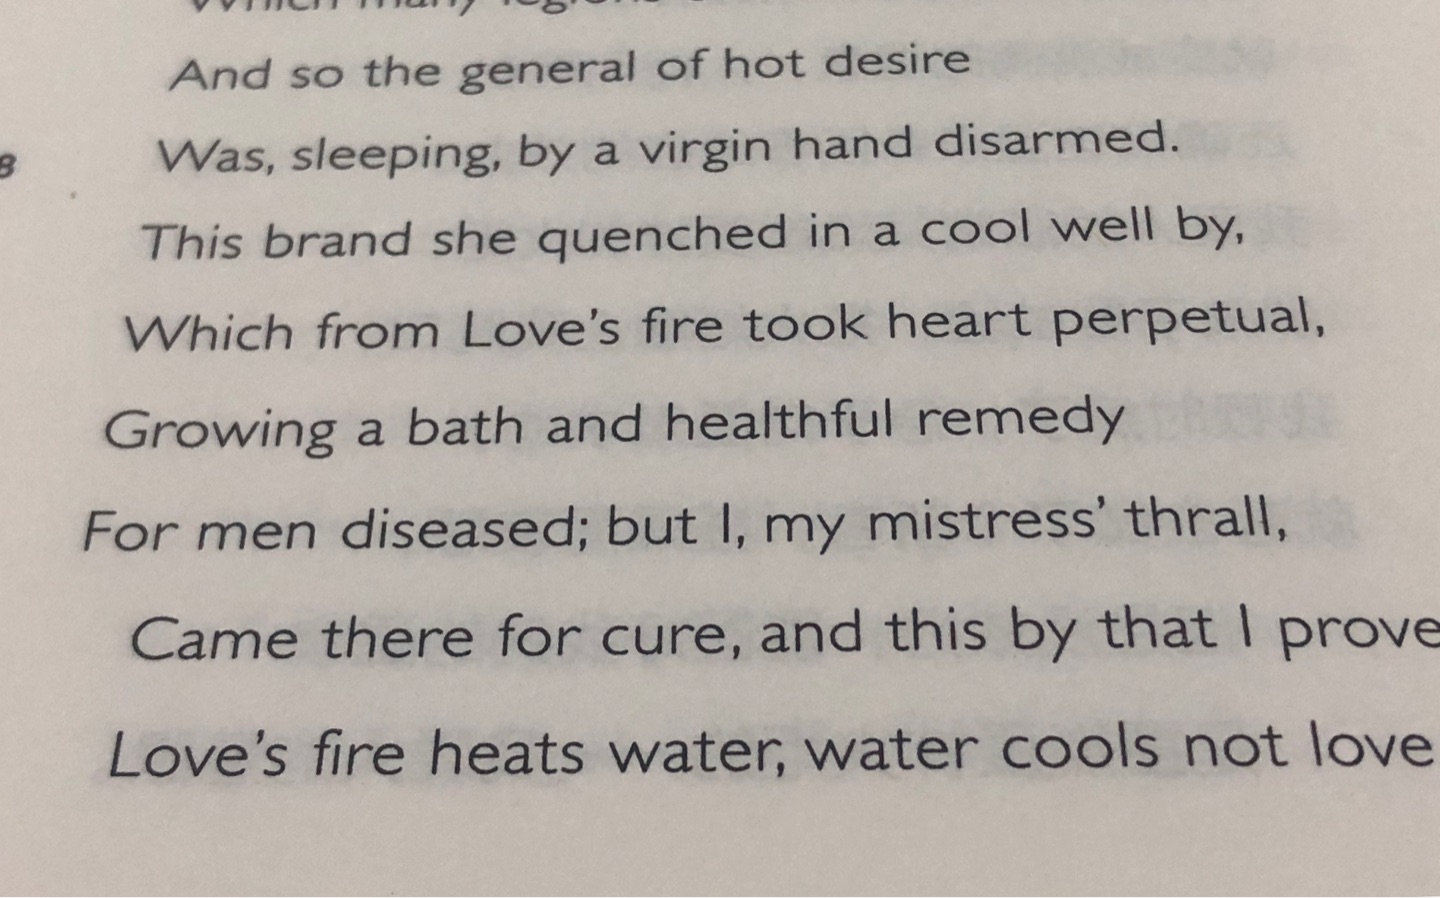 莎士比亚的诗真的好难真正读懂，选最后一句翻译；爱火烧热泉水，泉水凉不了爱